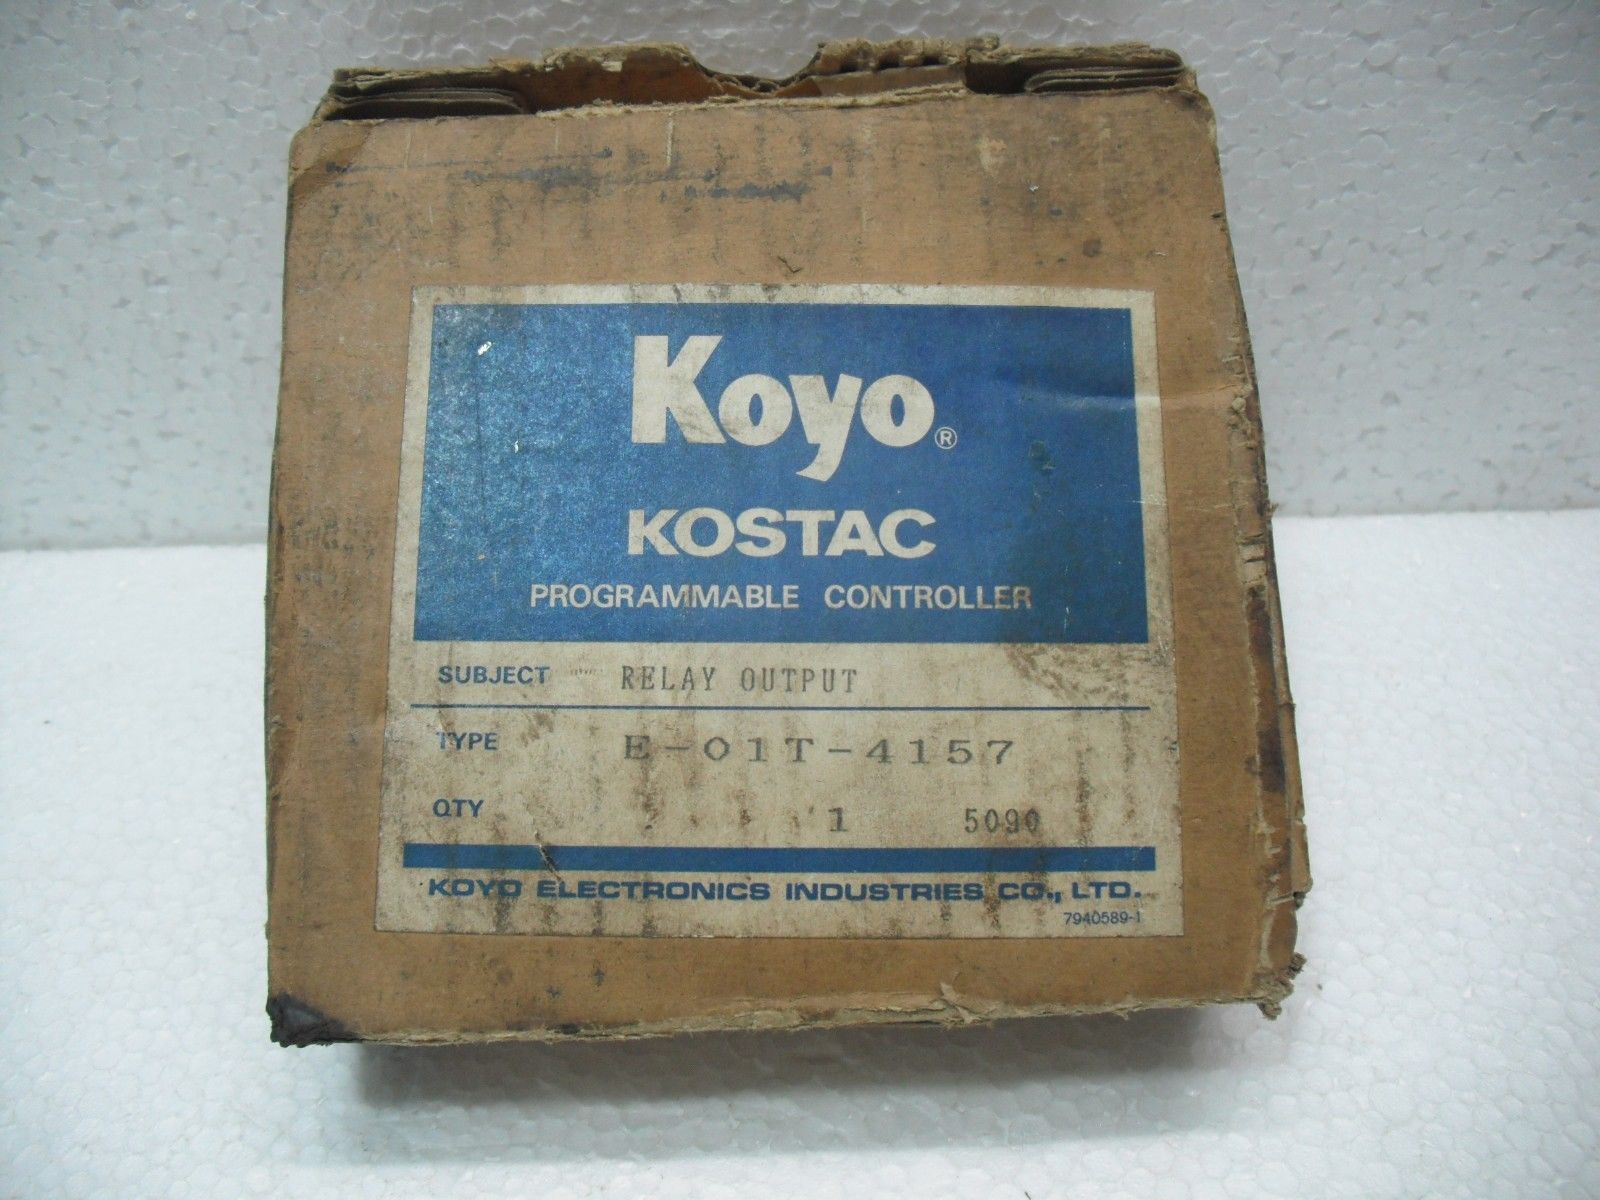 New Koyo Kostac E-01T-4157 Relay Output